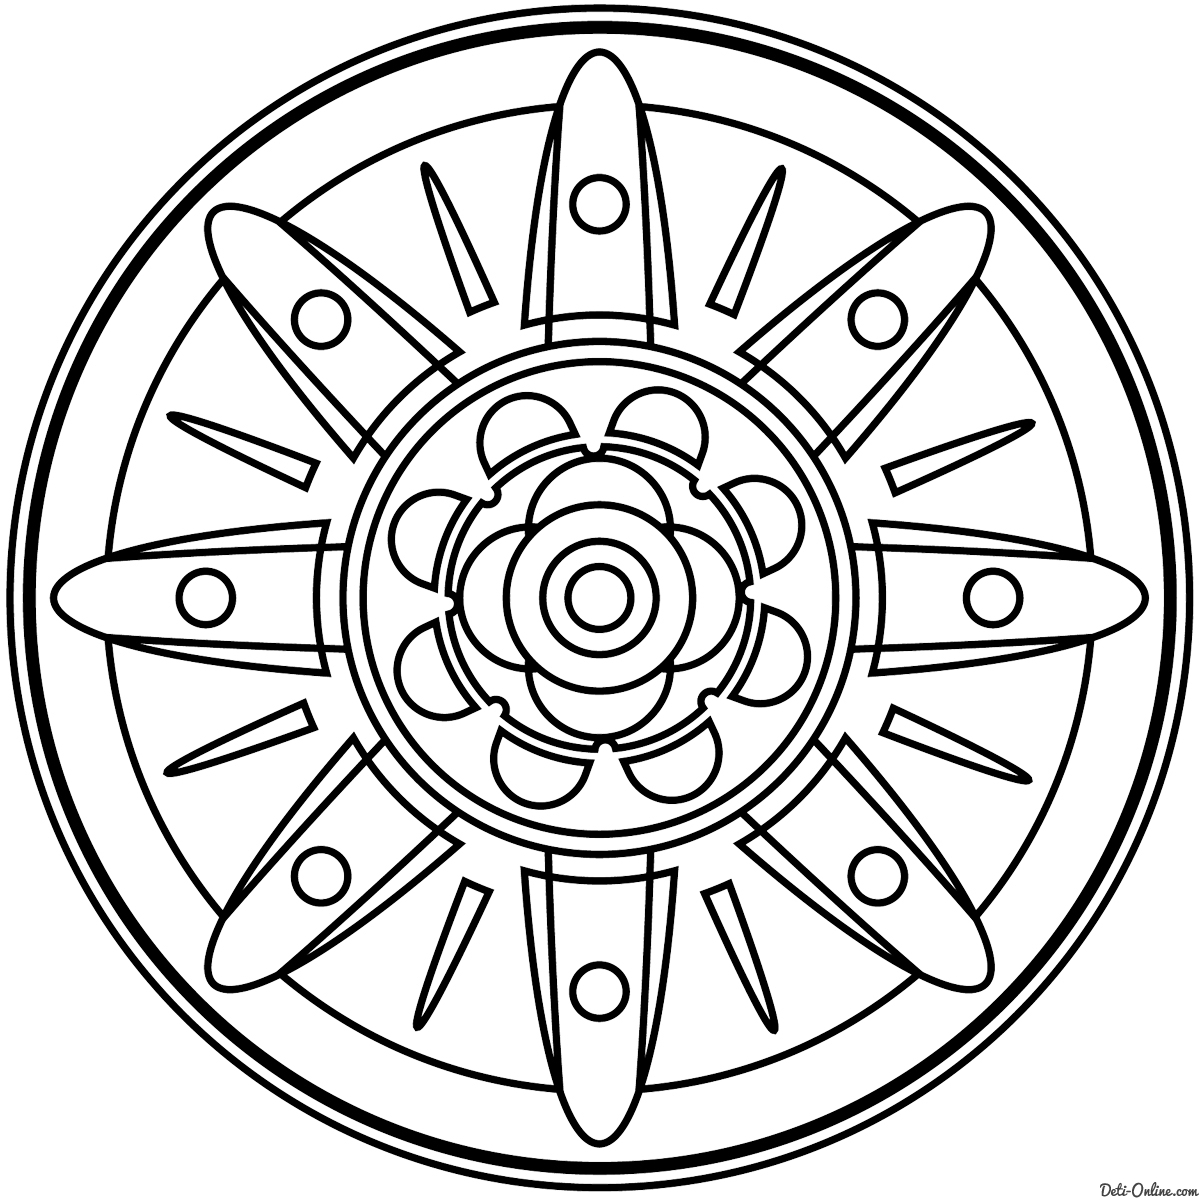 Интегративный урок «Мандалы» по теме «Окружность и круг»